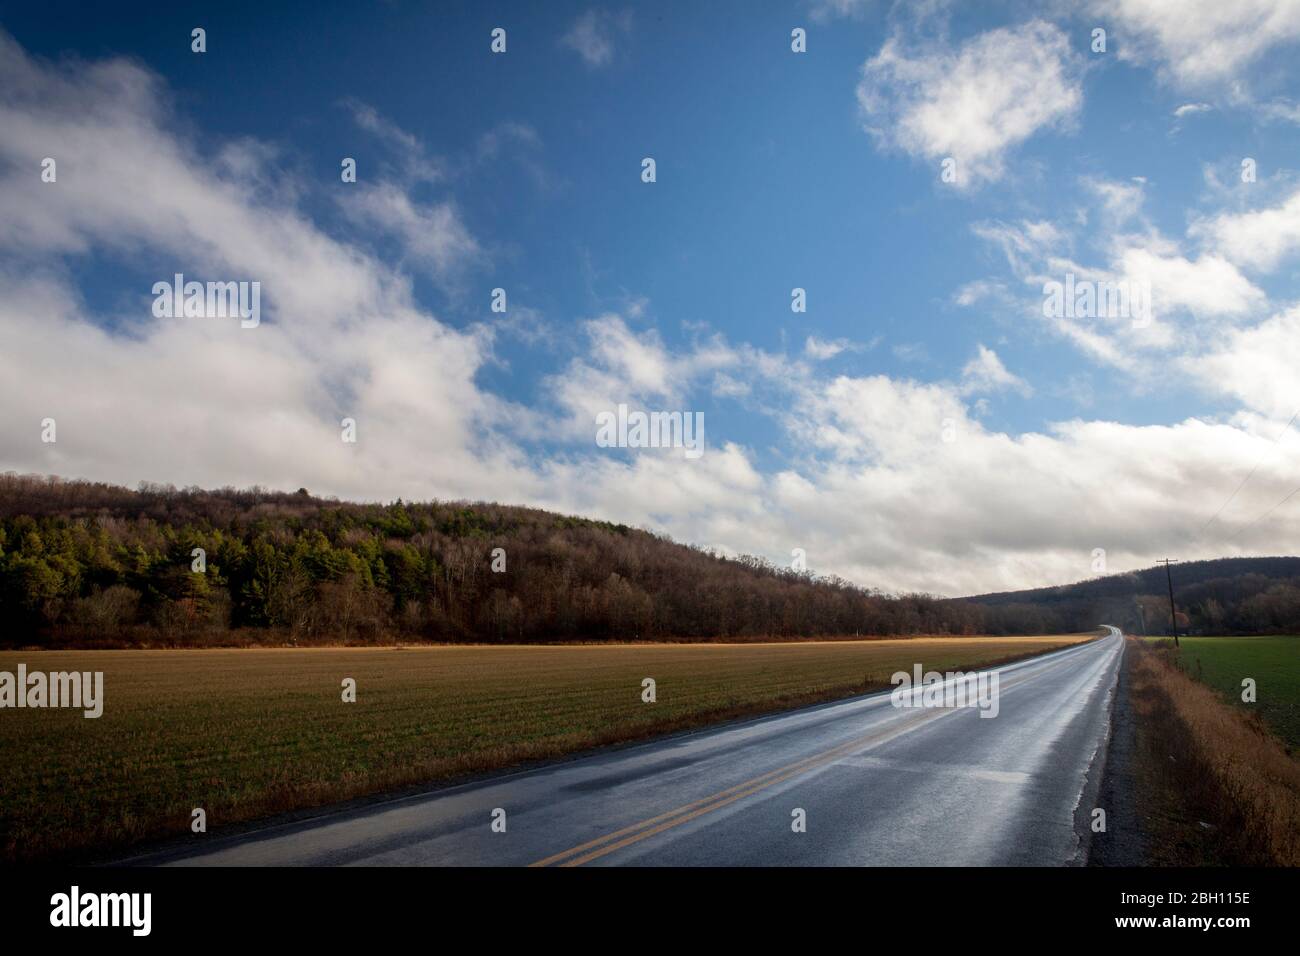 Una strada asfaltata e umida conduce oltre un campo agricolo in basse colline, sotto un cielo blu con nuvole bianche nella parte occidentale di New York, USA Foto Stock